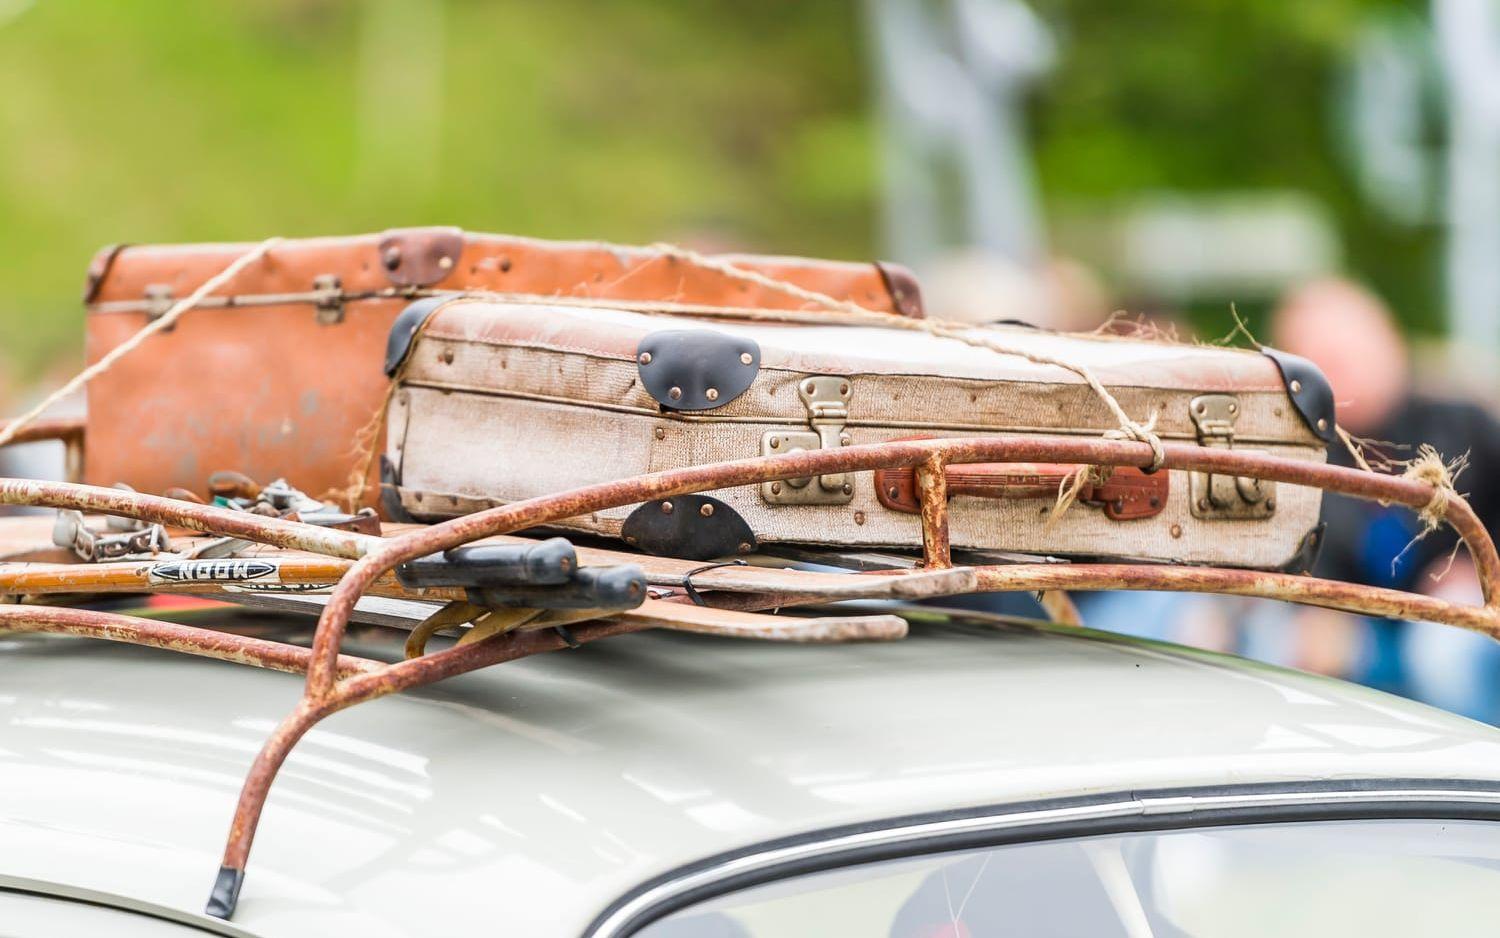 2019: Många veteranbilsfantaster anser det vara viktigt att ha så mycket orginaldelar på sin bil som möjligt. Kanske även väskor?